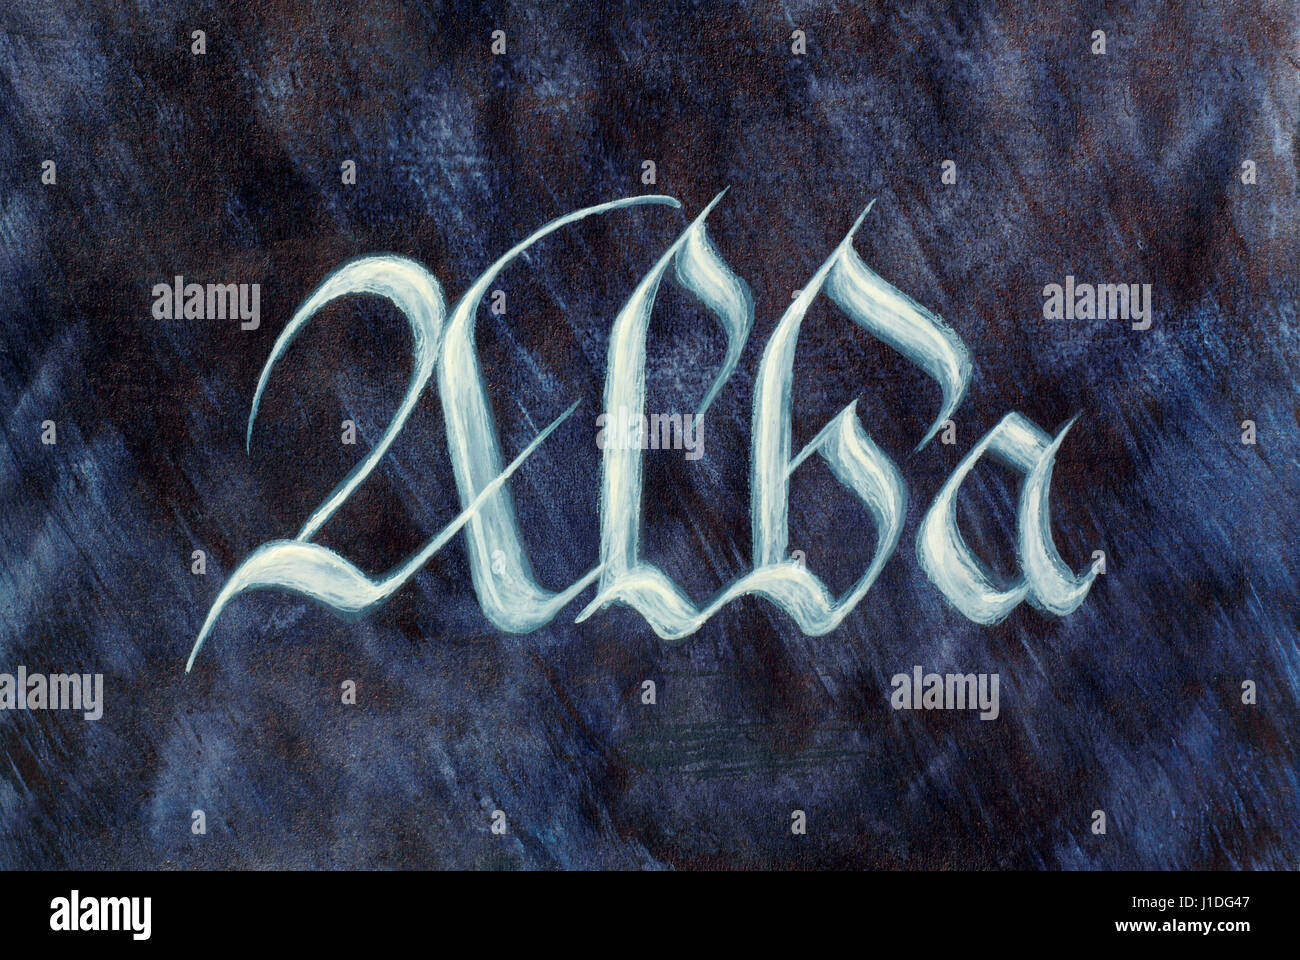 Nom pays peint sur fond sombre. L'Ecosse (Alba). Script gothique médiévale latine. Gaélique écossais. Banque D'Images